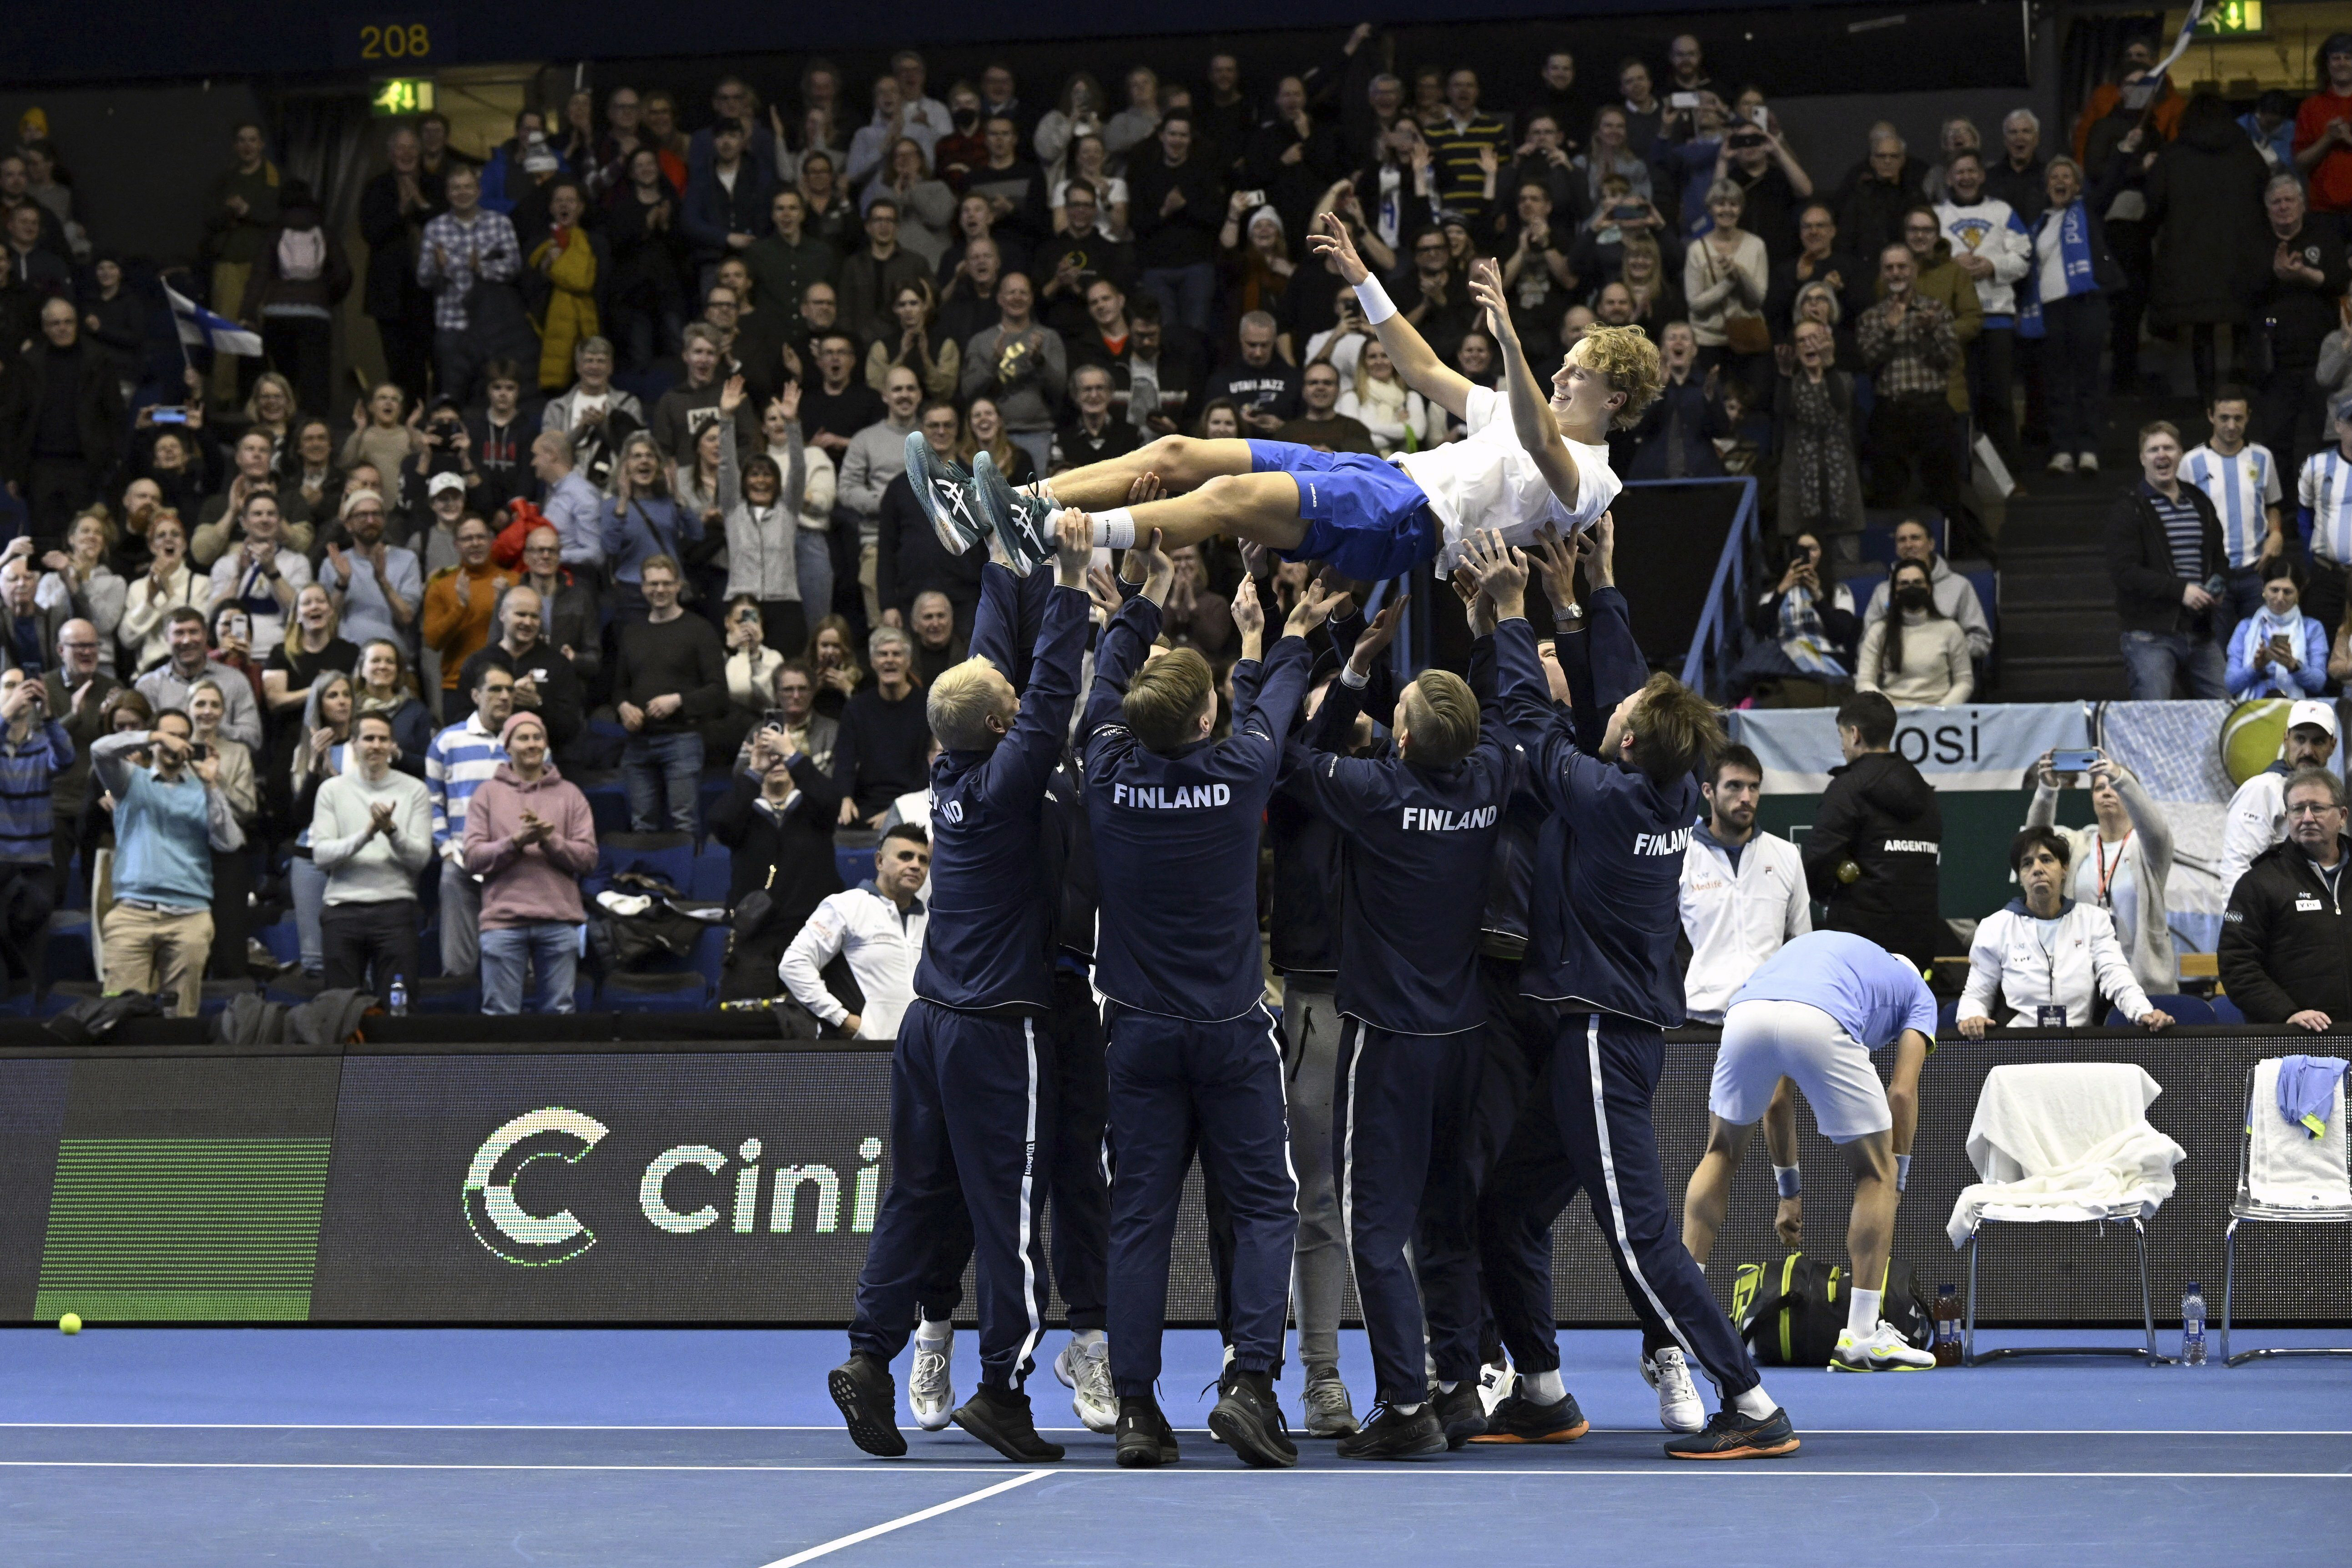 El finlandés Emil Ruusuvuori es lanzado al aire por sus compañeros de equipo tras eliminar a Argentina en duelo de la Copa Davis en Espoo, Finlandia, el domingo 5 de febrero de 2023. (Emmi Korhonen/Lehtikuva vía AP)